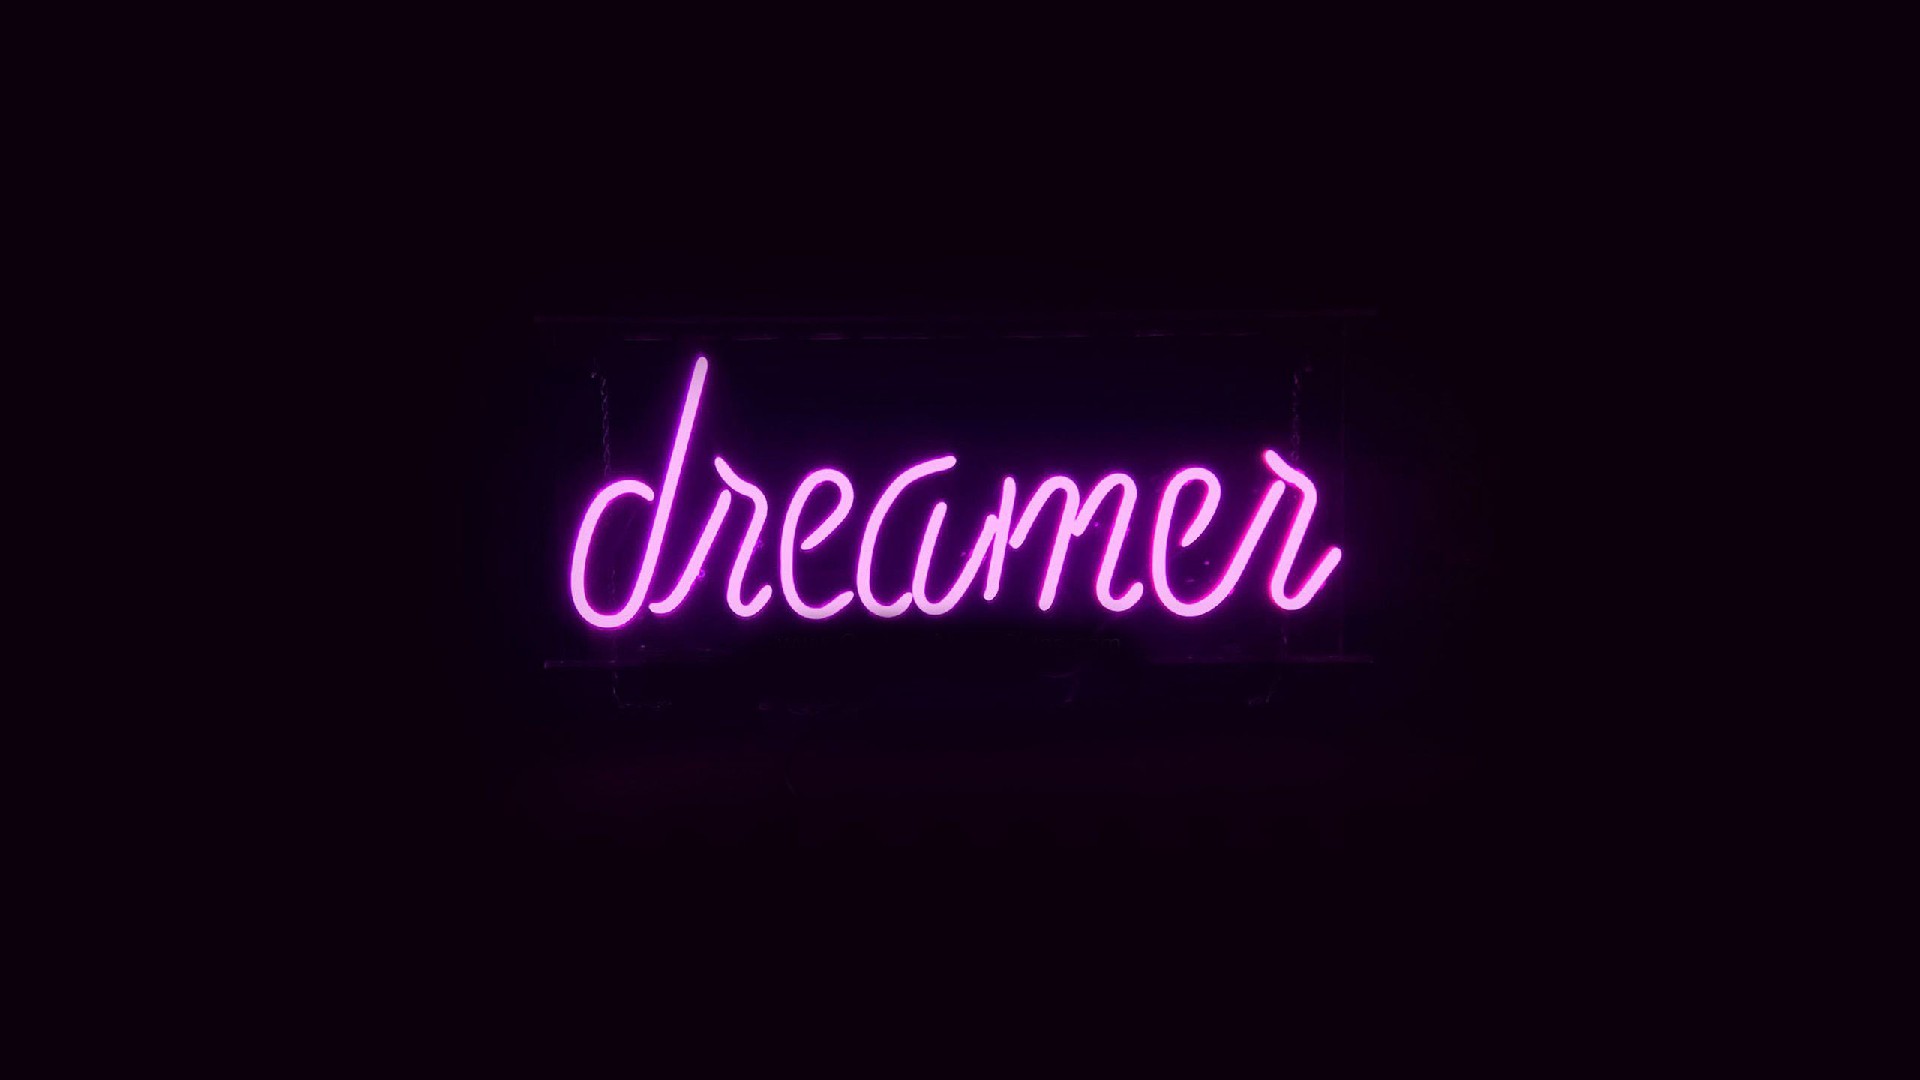 Dreamer wallpaper - backiee